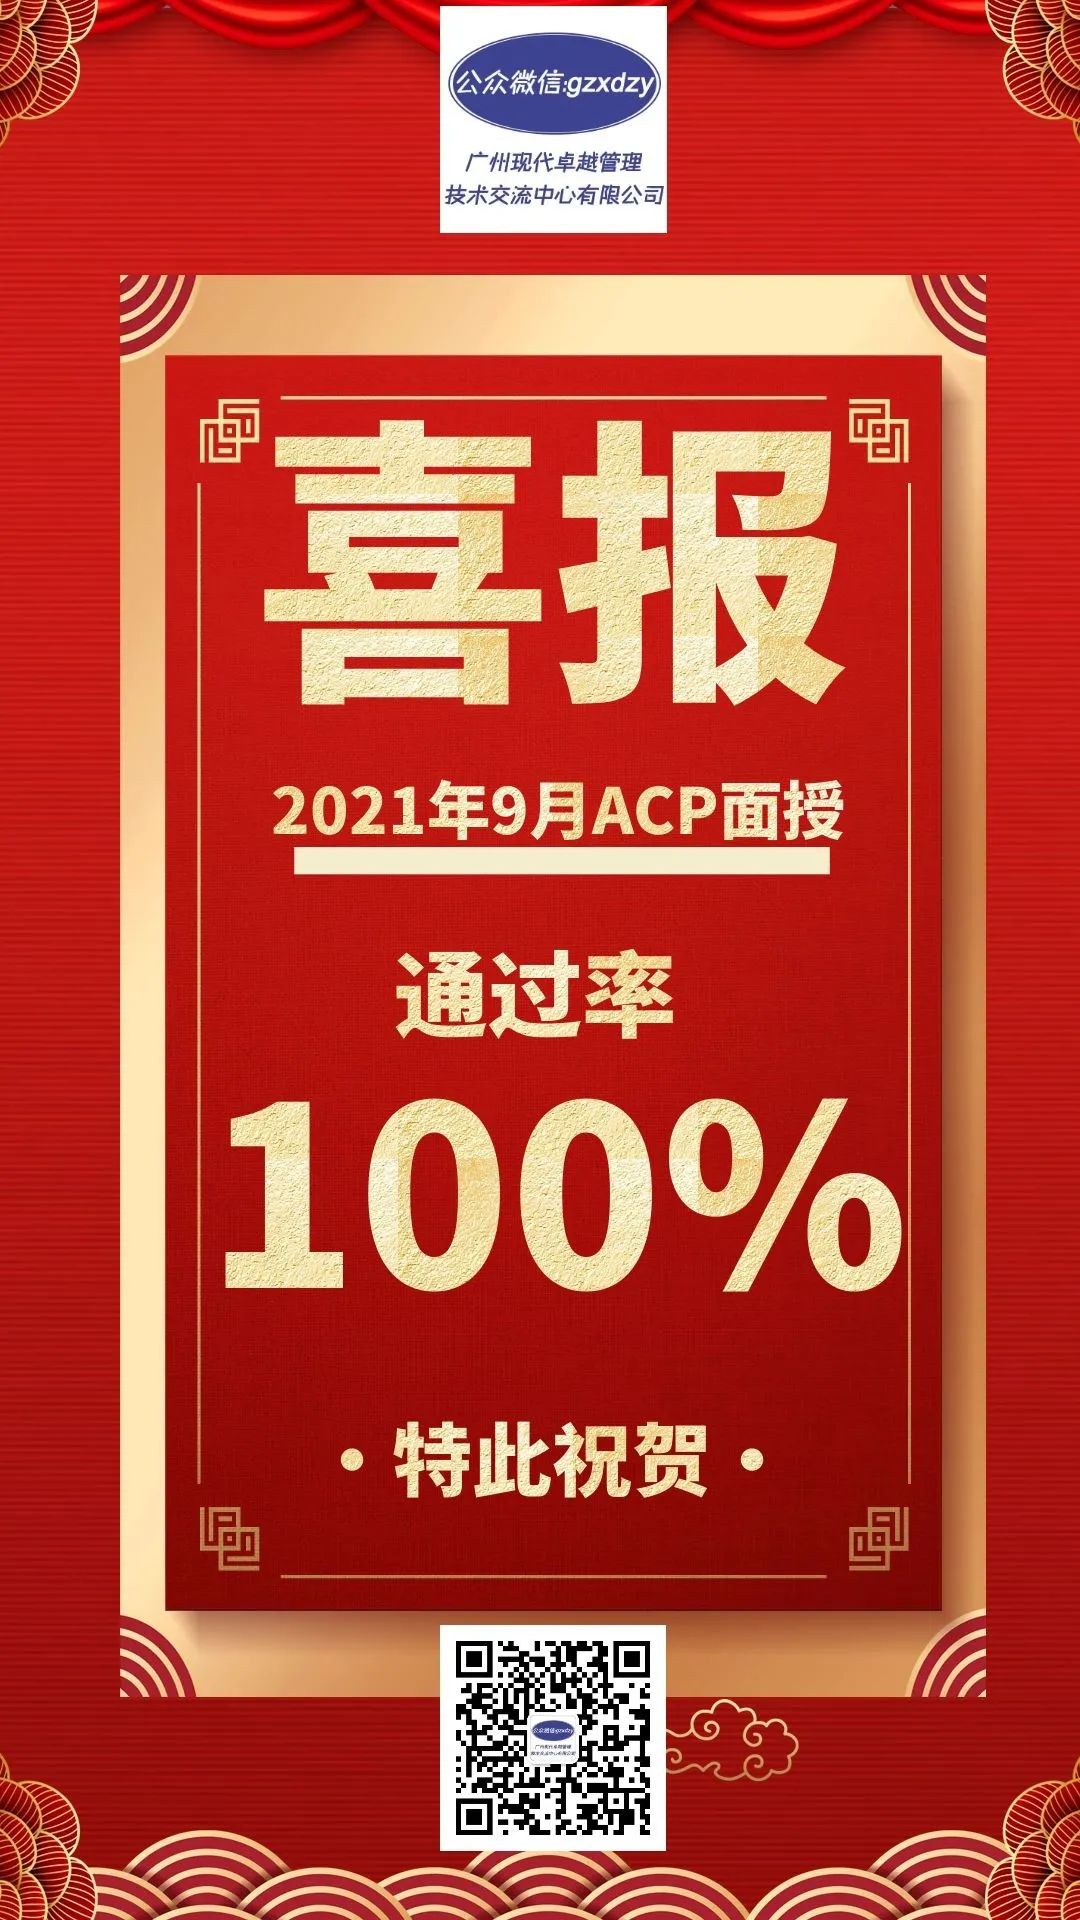 敏捷ACP面授通過率100% 敏捷ACP遠程通過率100%